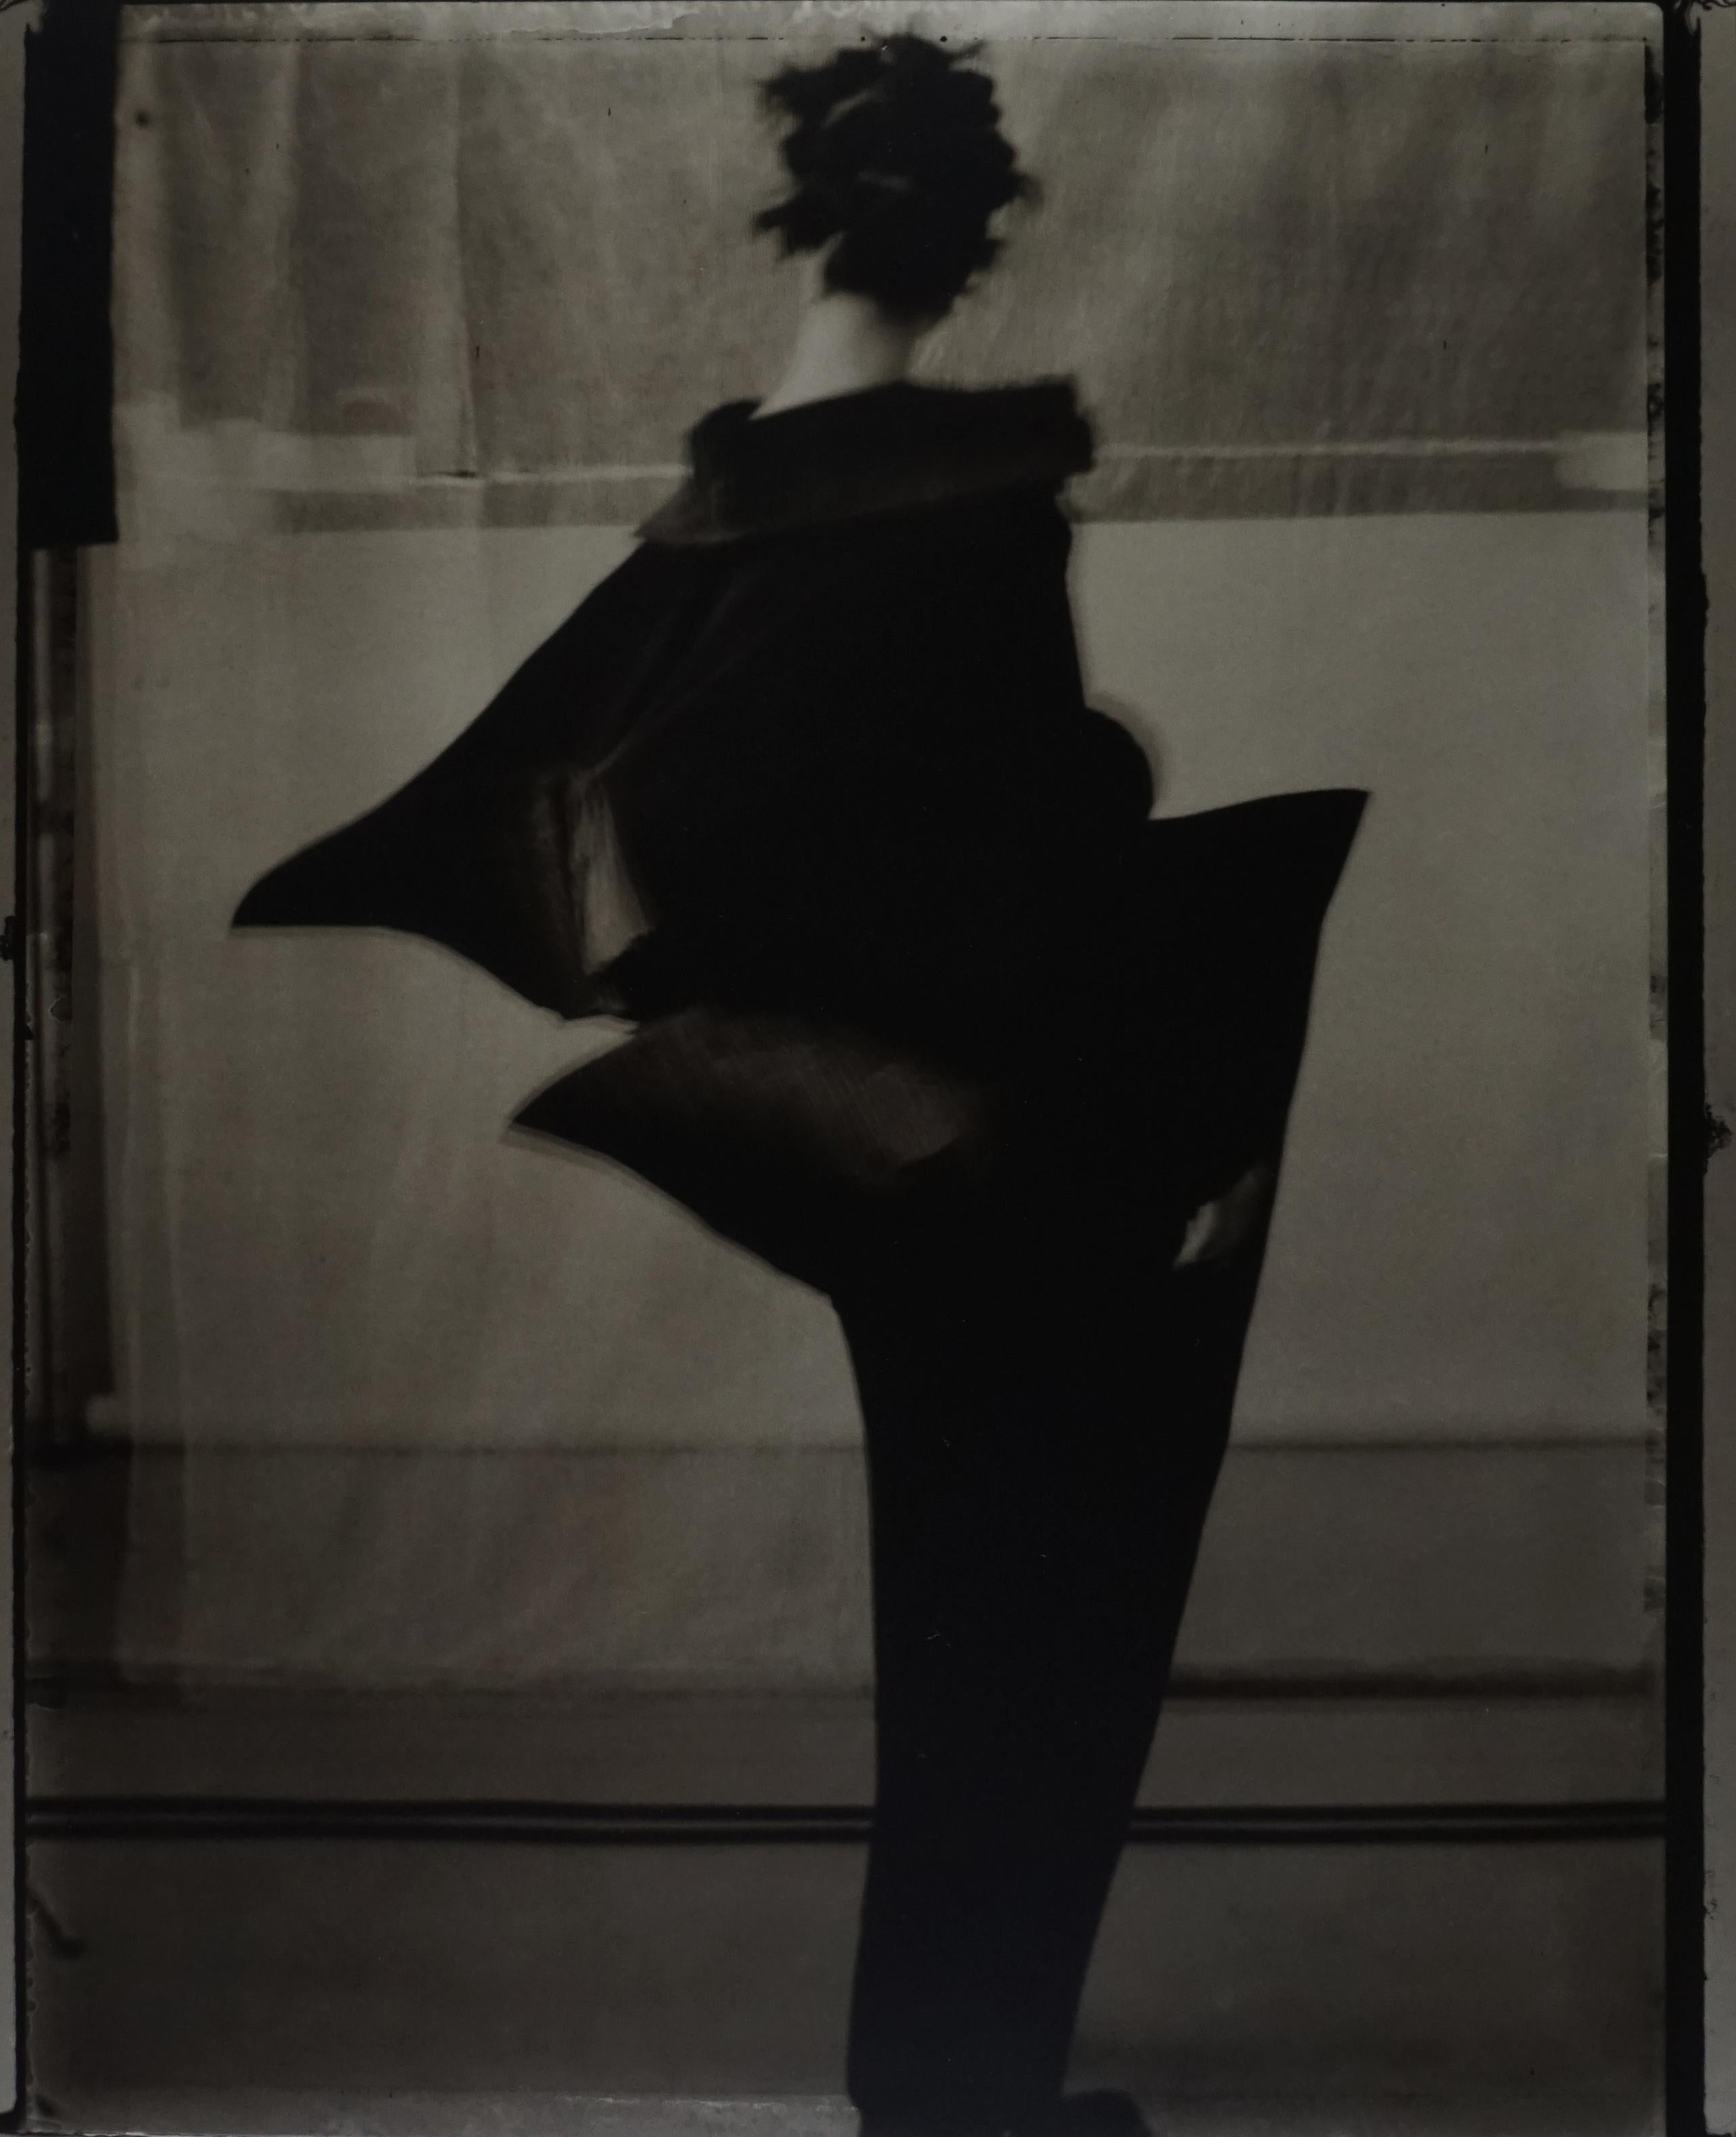 Sarah Moon Black and White Photograph - Issey Miyake II, 1992